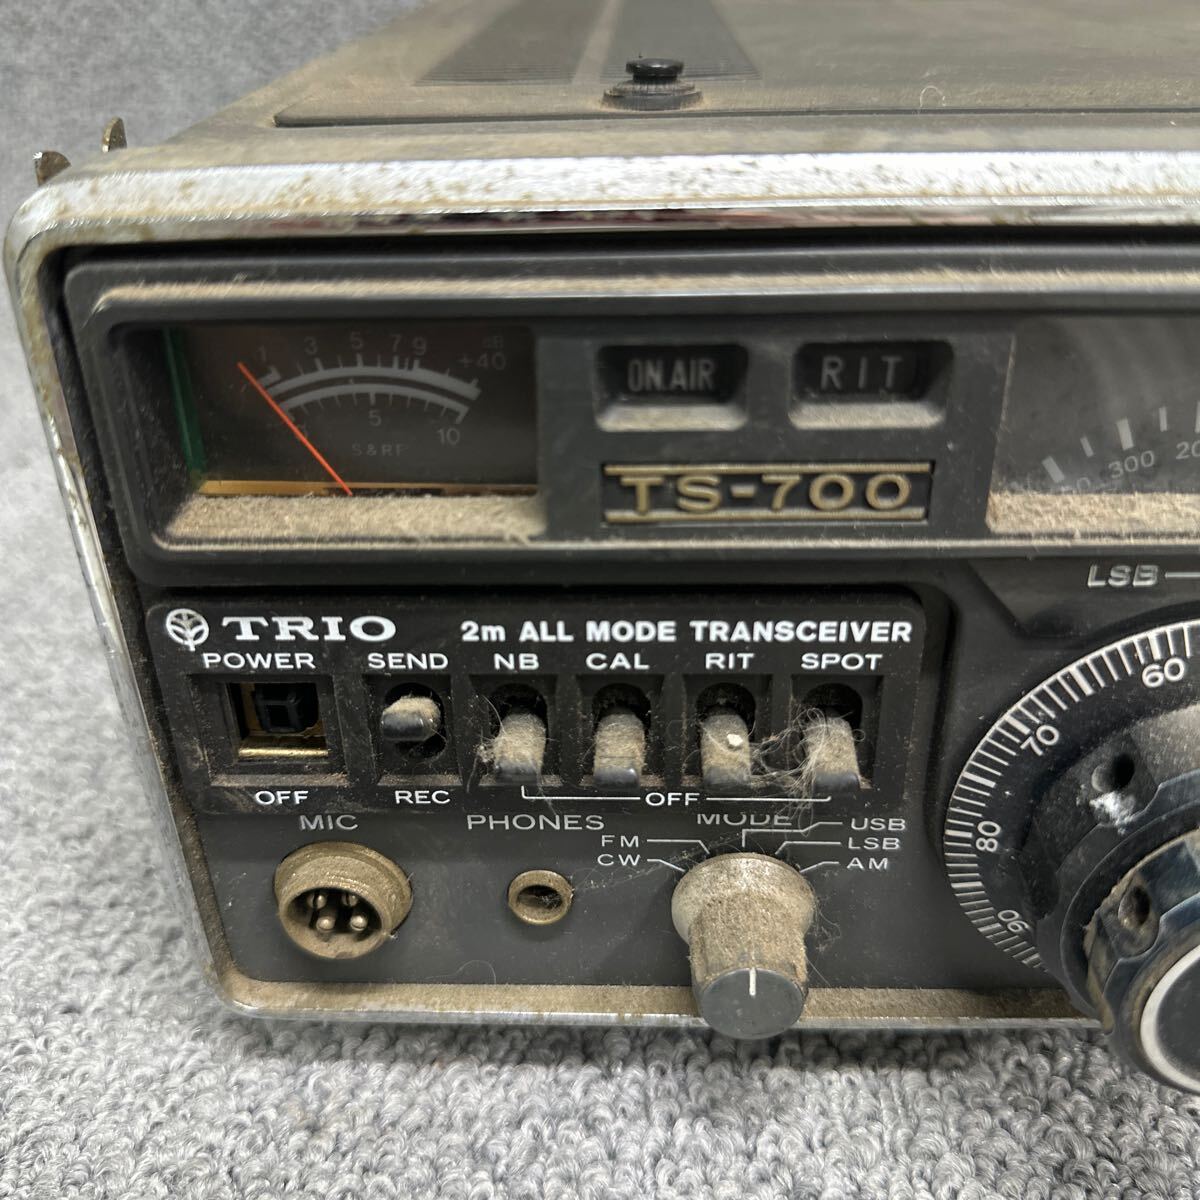 MYM5-45 激安 TRIO トリオ 無線機 TS-700 2m ALL MODE TRANSCEIVER トランシーバー アマチュア無線 中古現状品 ※3回再出品で処分の画像2